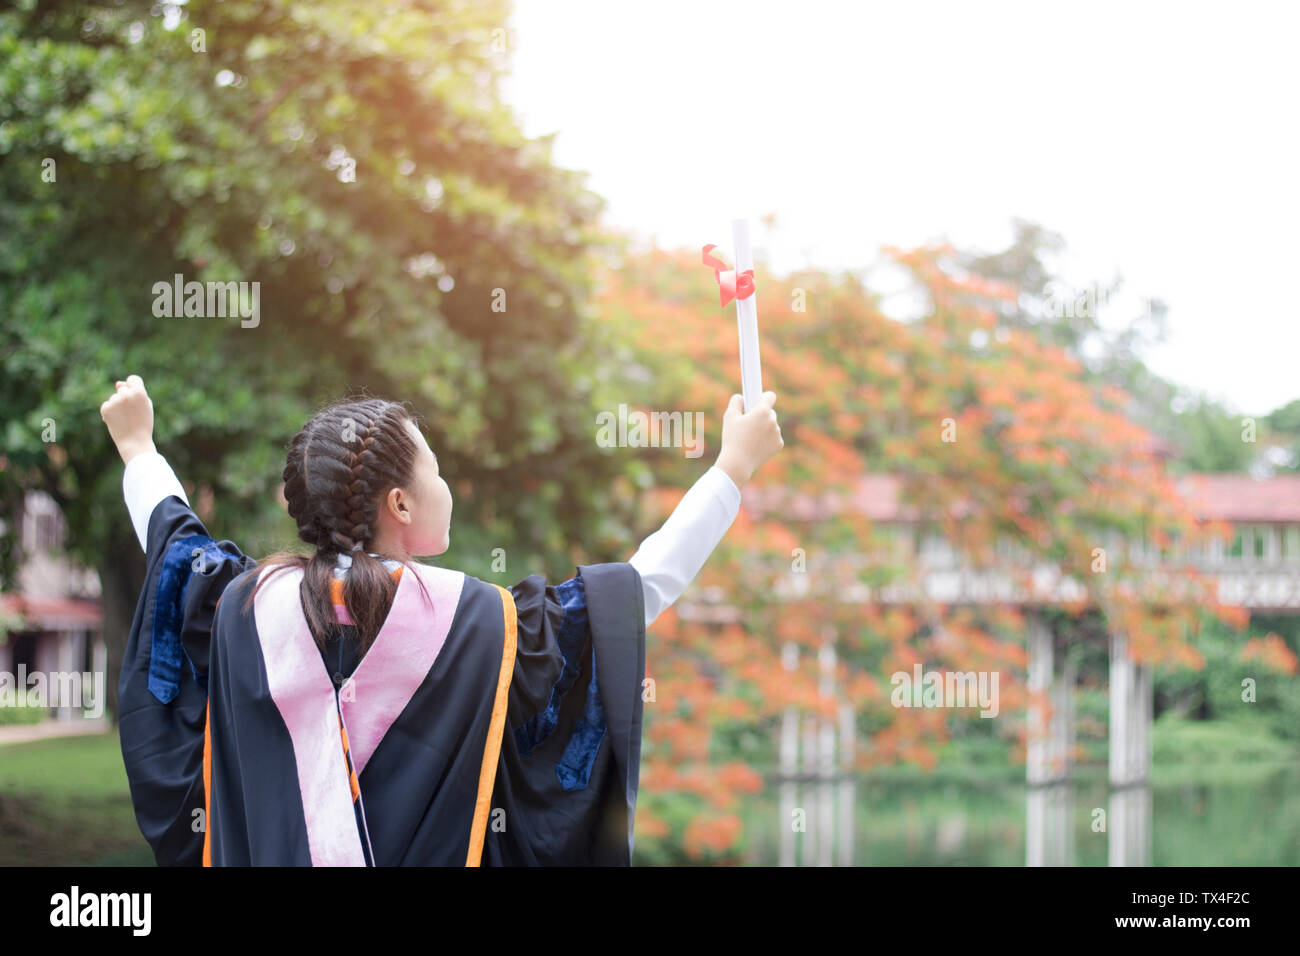 Glücklich und froh, graduierte Asiatische student stehendes Mädchen und zeigt Hand, Glückwünsche, Weiterbildung Erfolg, Konzept Bildung und fertig Lea Stockfoto